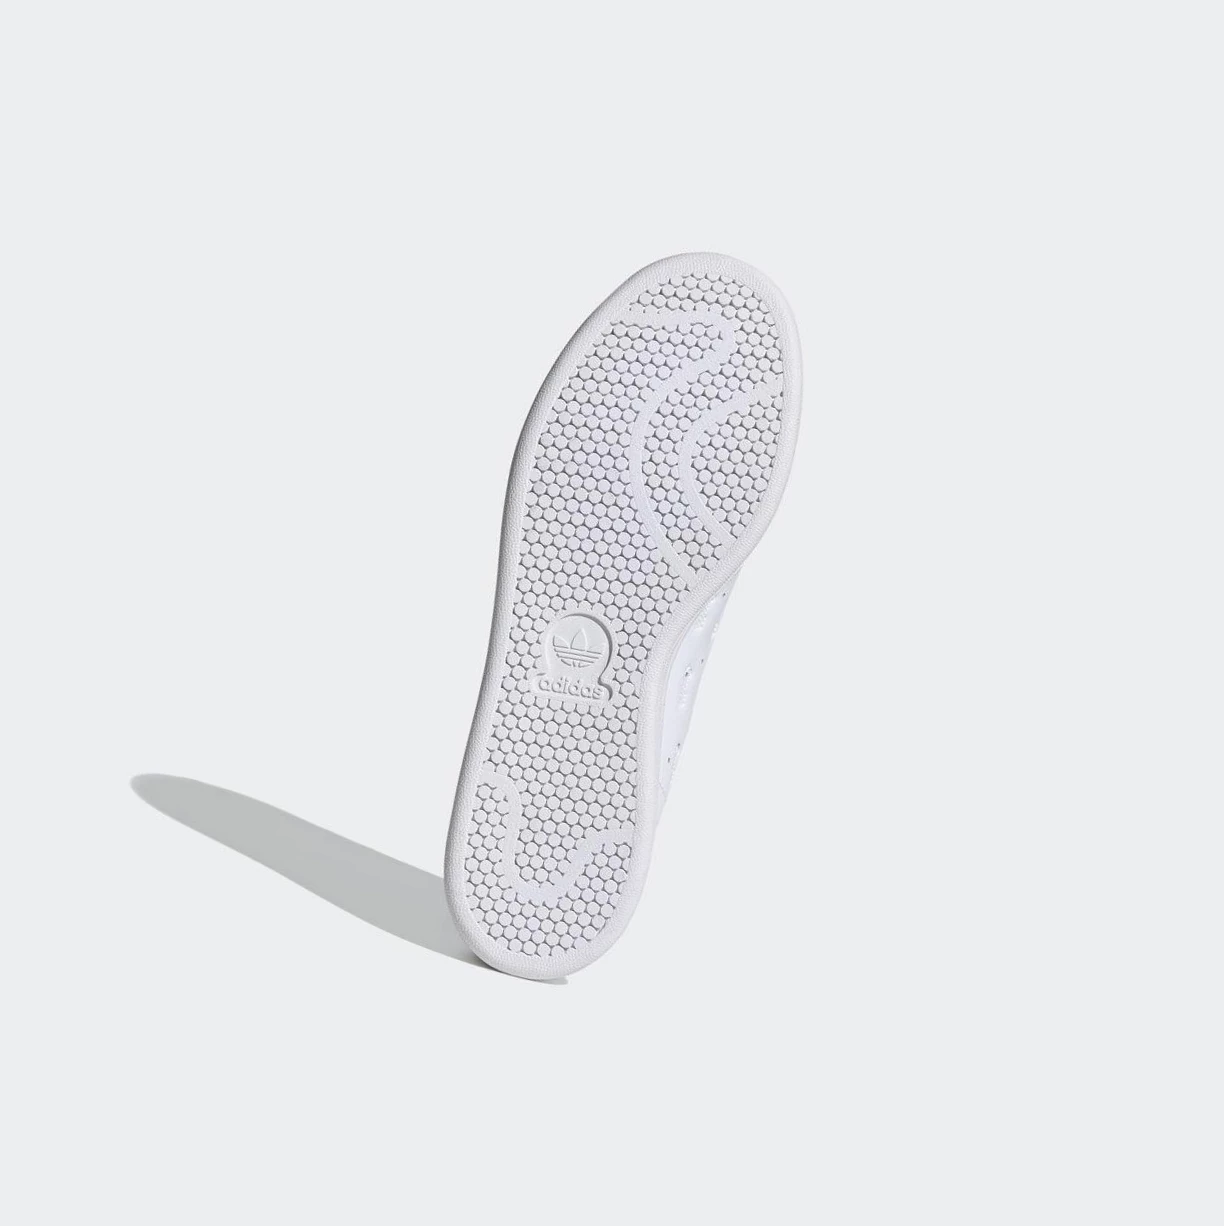 Originálne Topánky Adidas Stan Smith Panske Biele | 758SKCYTOFV